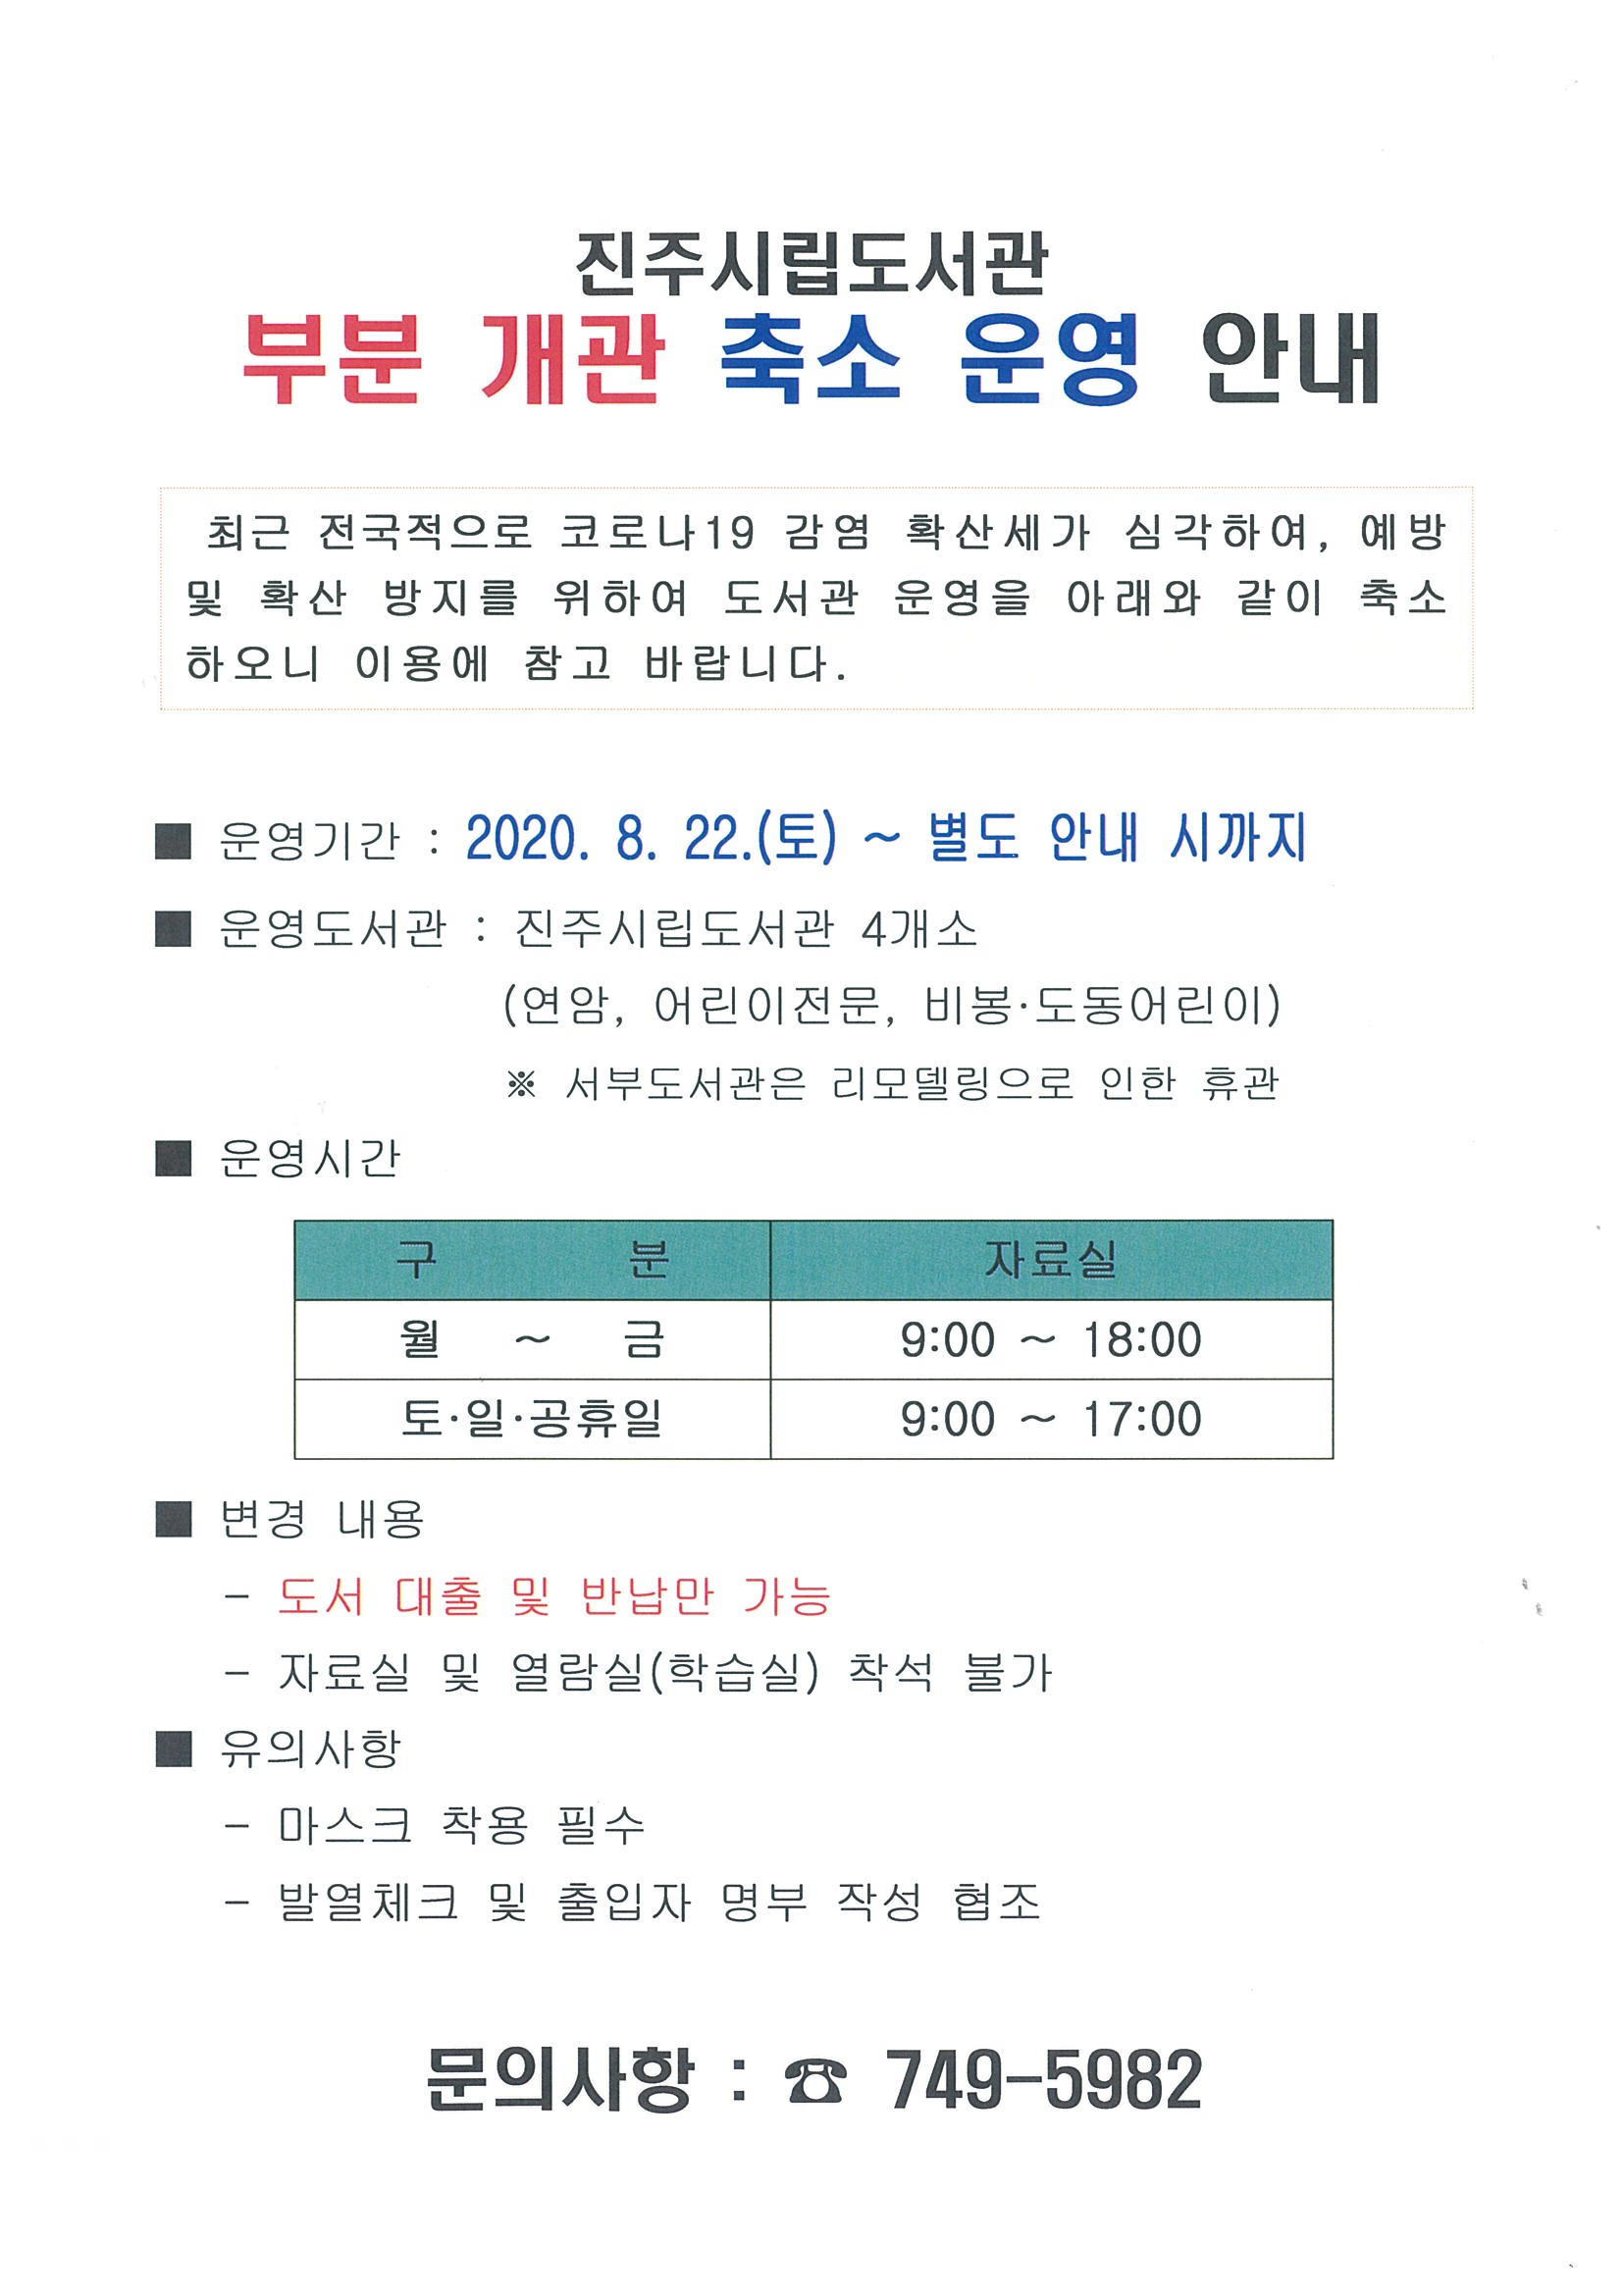 [8월 22일(토)~]진주시립도서관 부분개관 축소 운영 안내